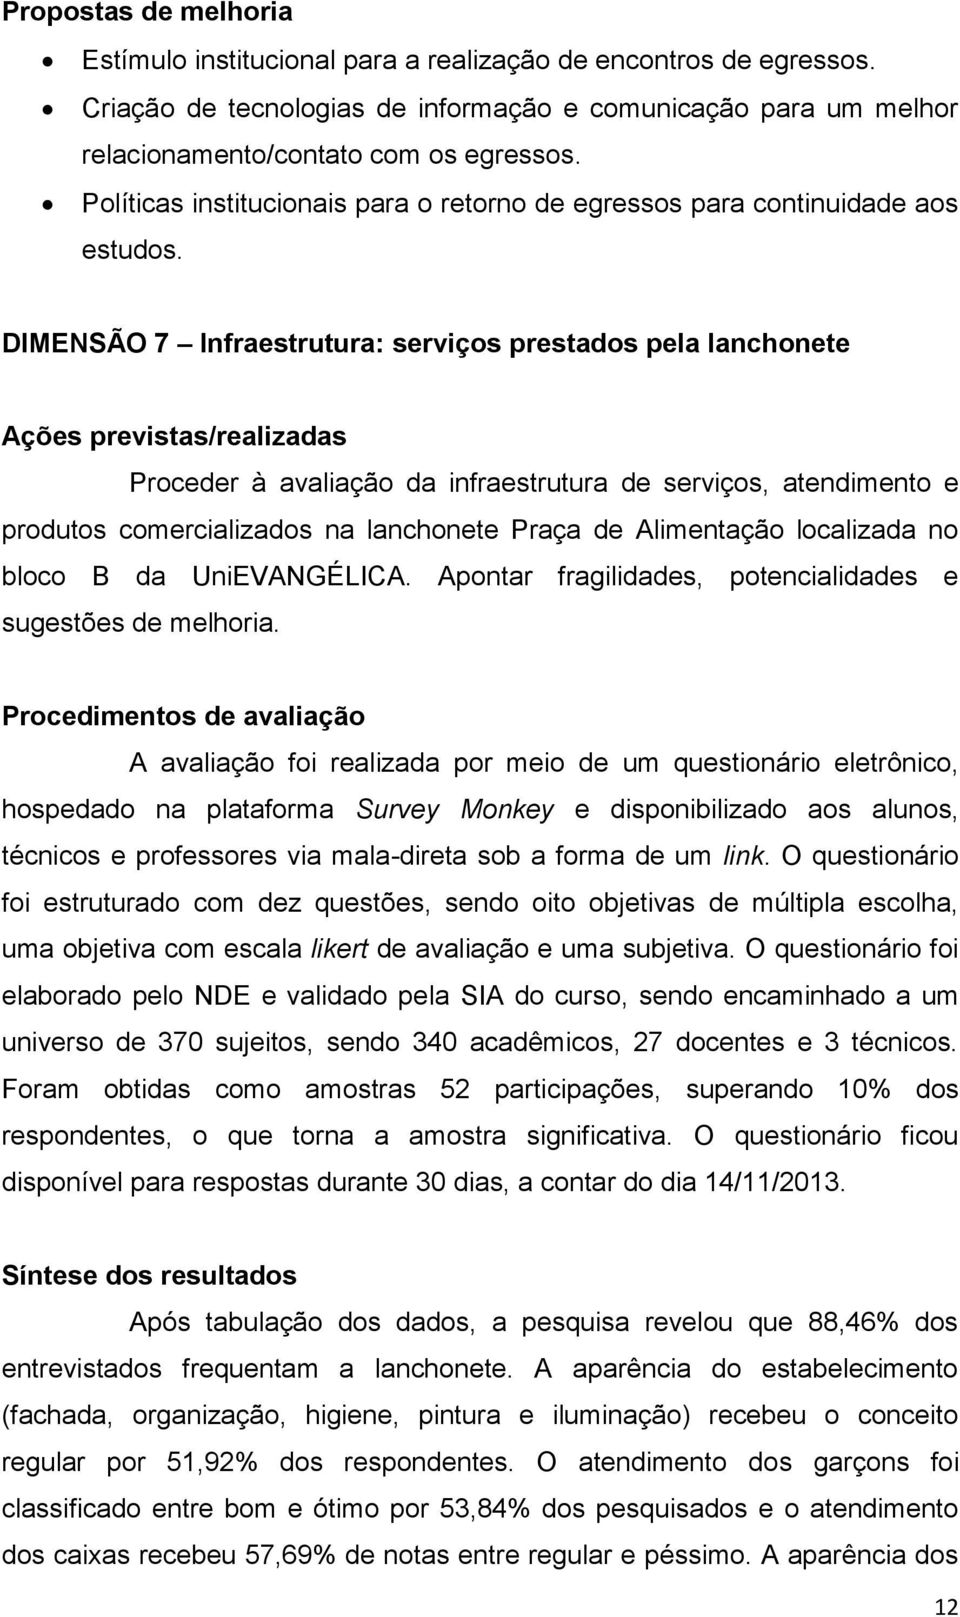 DIMENSÃO 7 Infraestrutura: serviços prestados pela lanchonete Ações previstas/realizadas Proceder à avaliação da infraestrutura de serviços, atendimento e produtos comercializados na lanchonete Praça